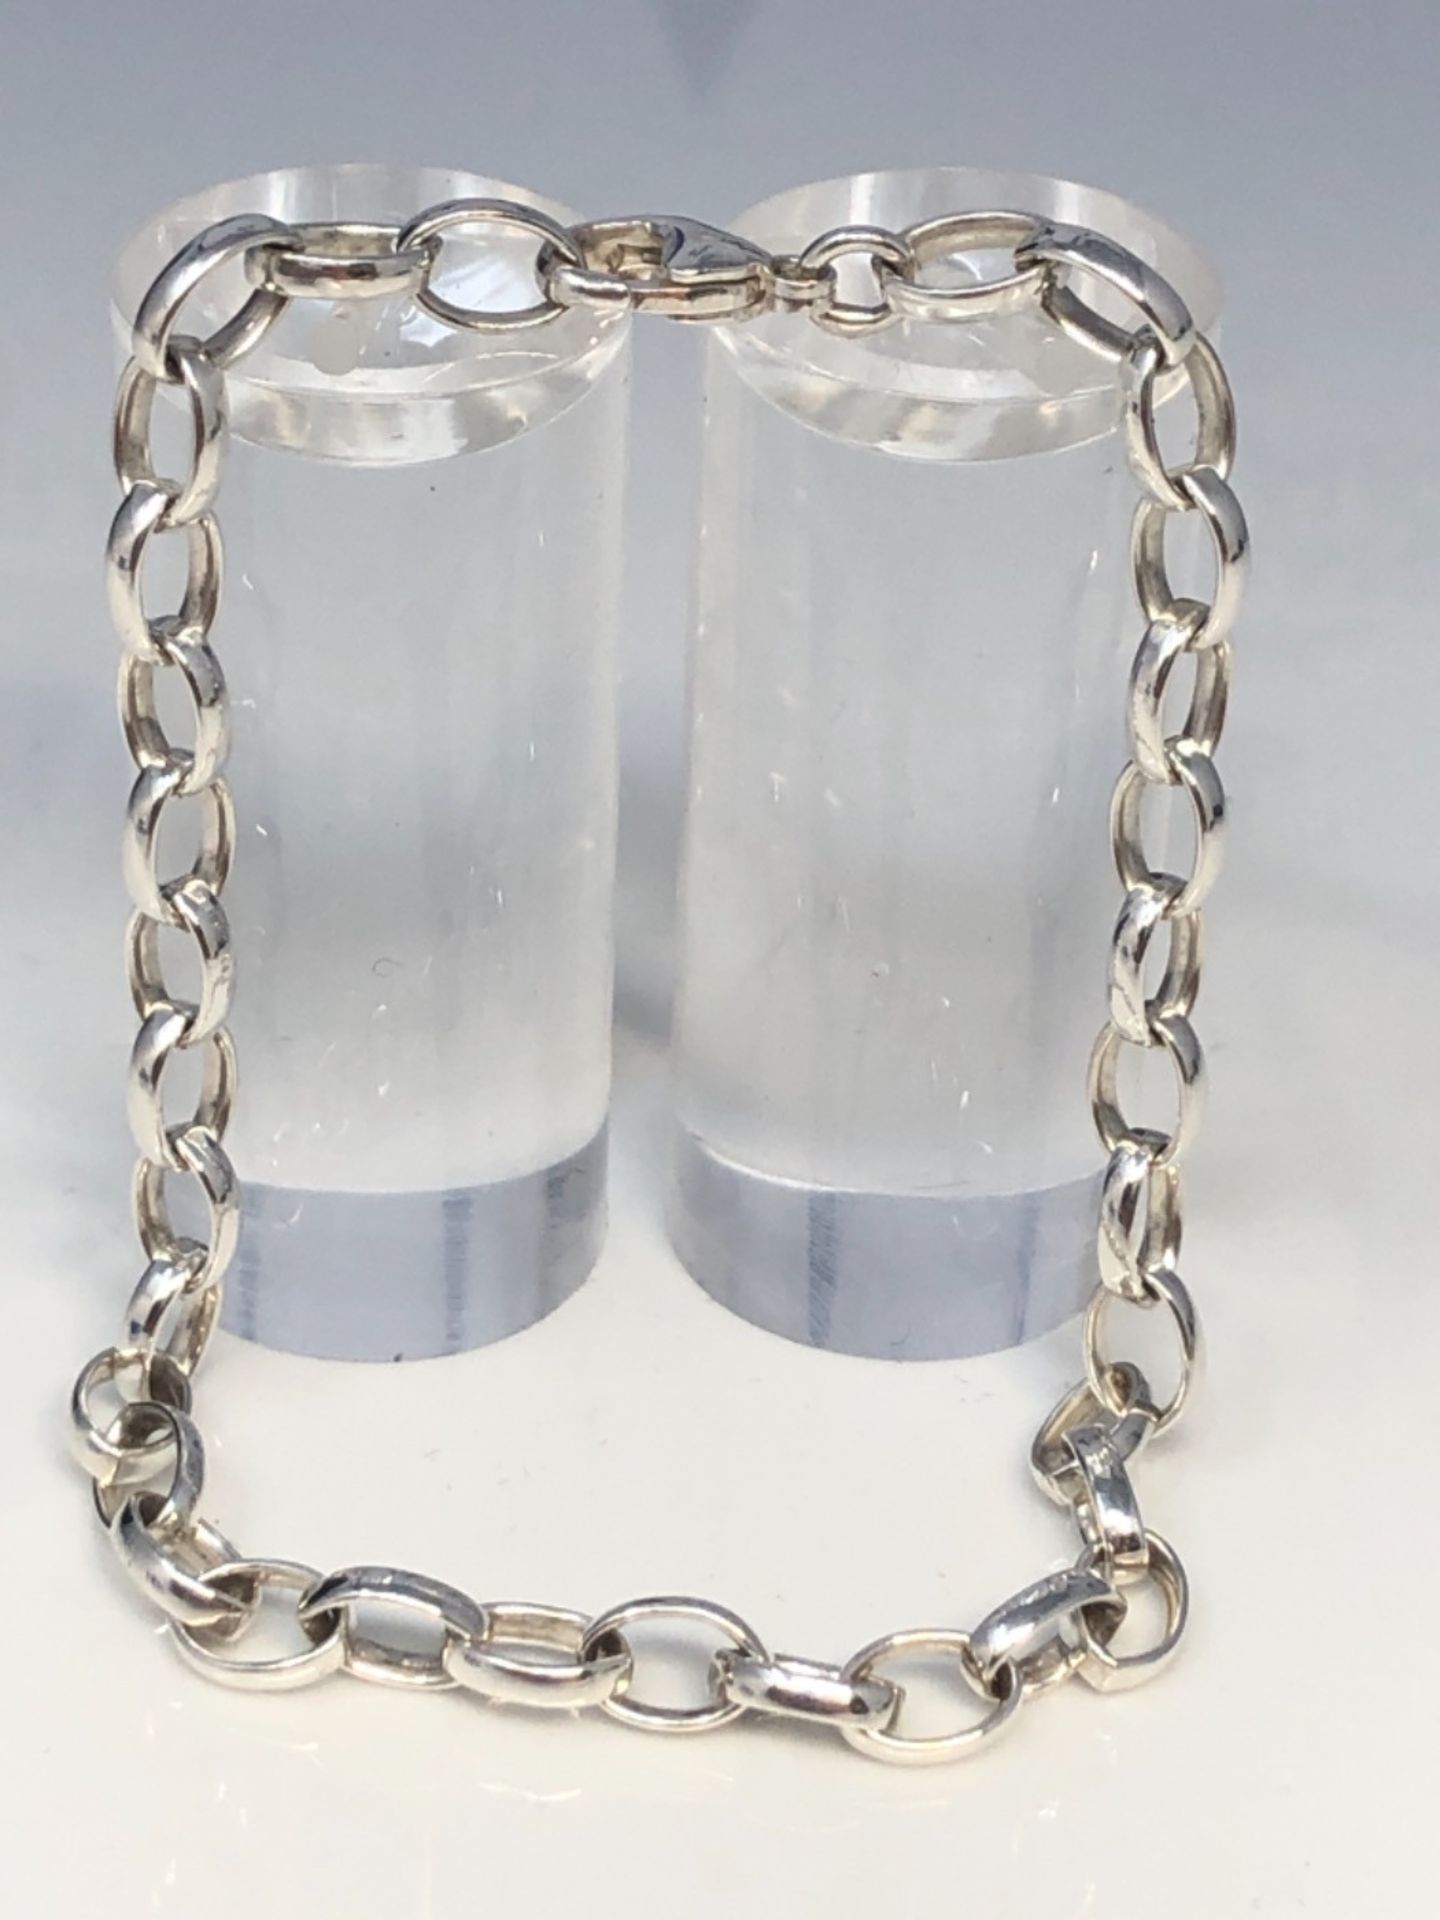 Thomas Sabo Women Silver Charm Bracelet - X0229-404-17-L19.5 - Image 3 of 4